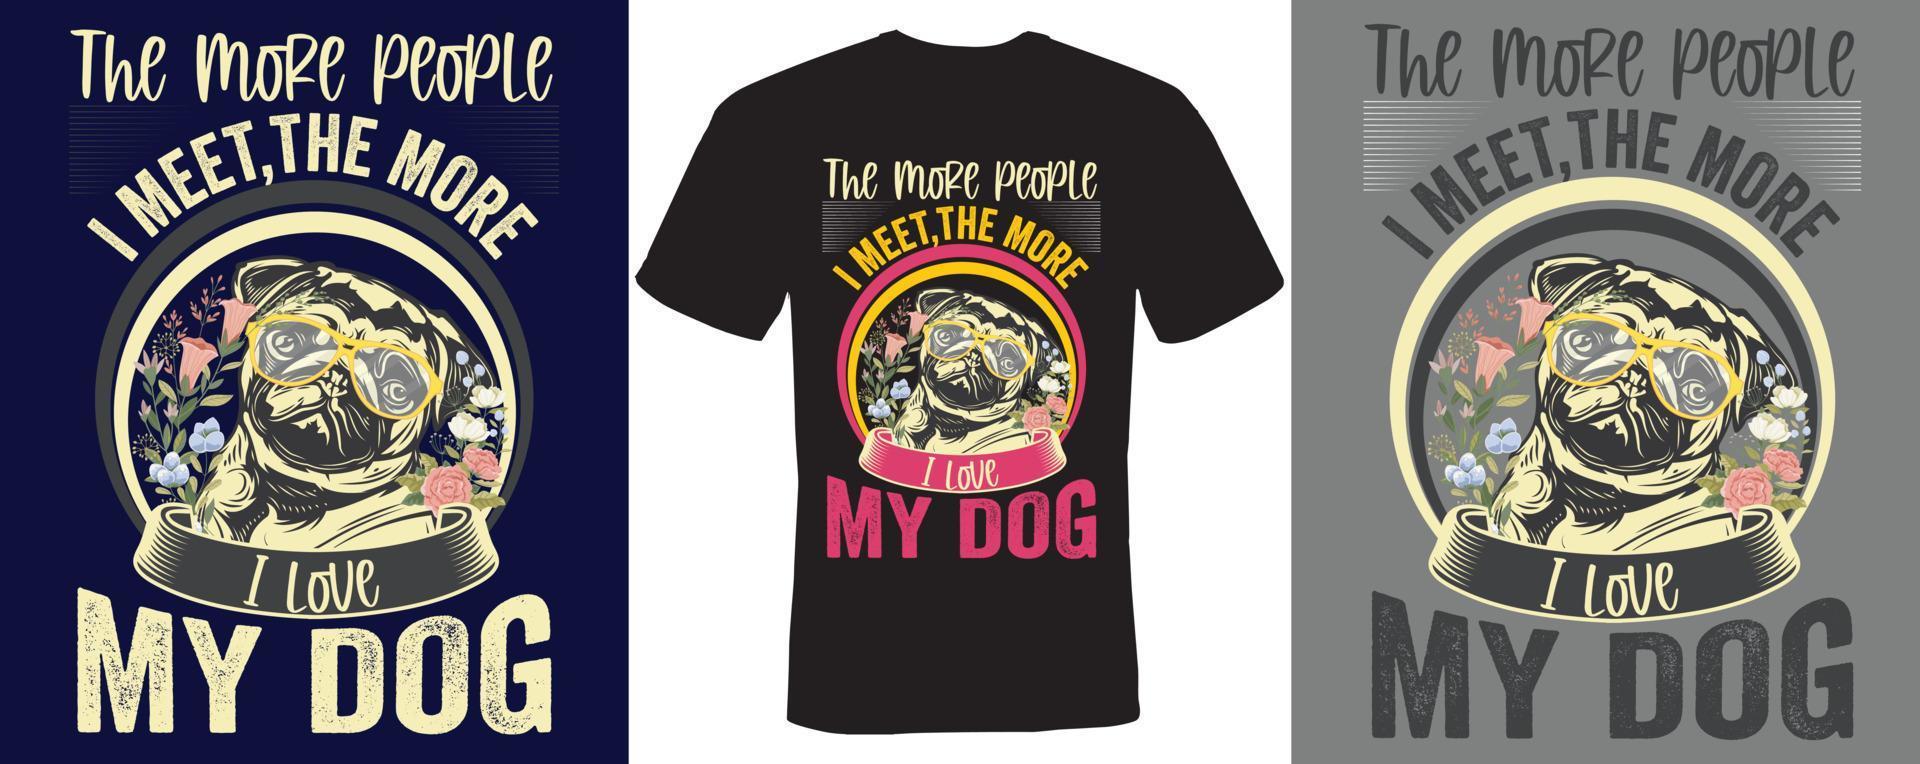 Je mehr Leute ich treffe, desto mehr liebe ich mein Hunde-T-Shirt-Design für Hunde vektor